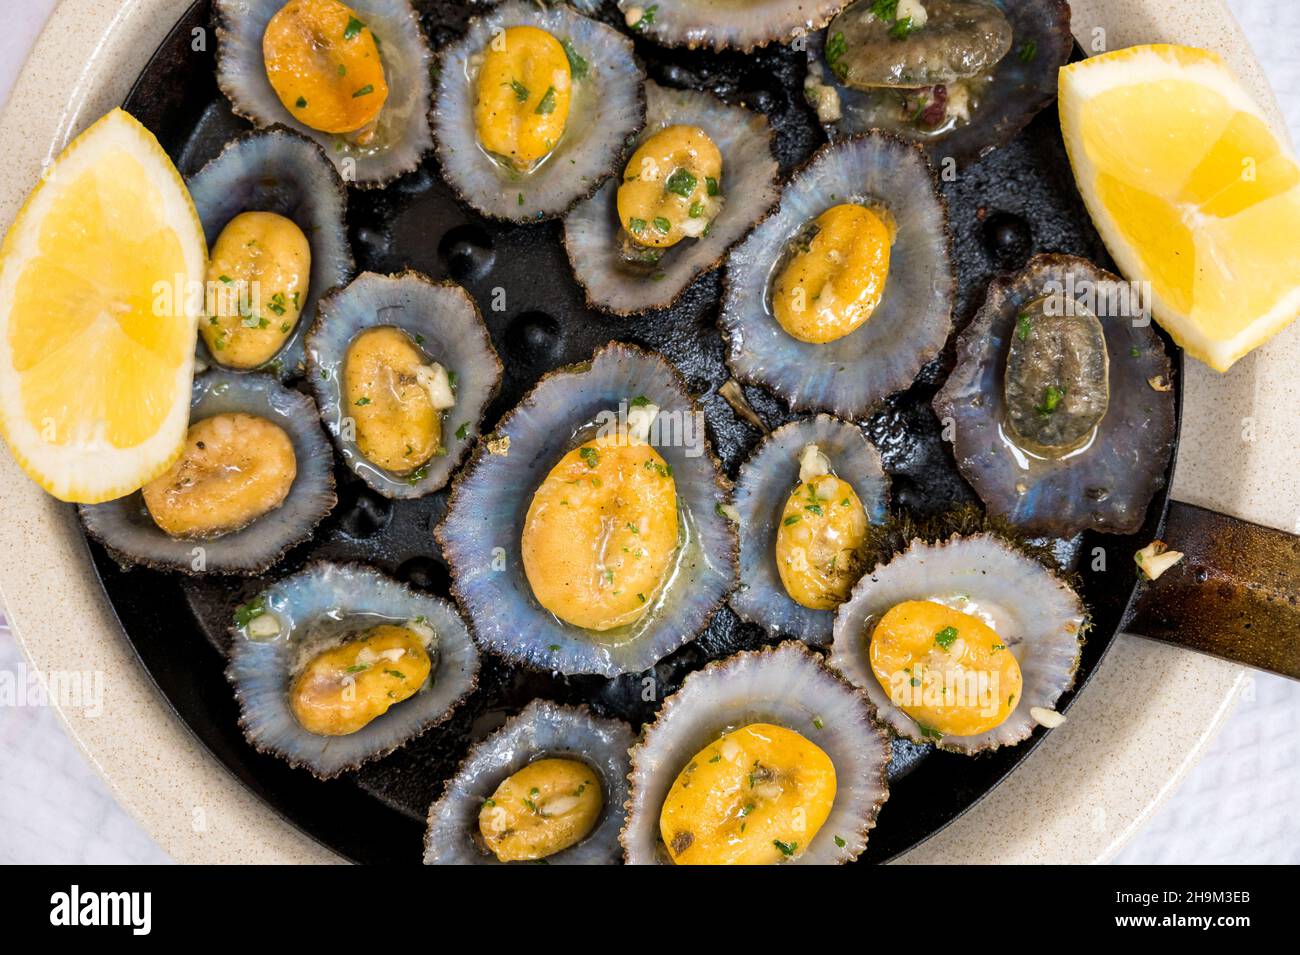 gustosi frutti di mare - limette alla griglia servite con limone. Foto Stock